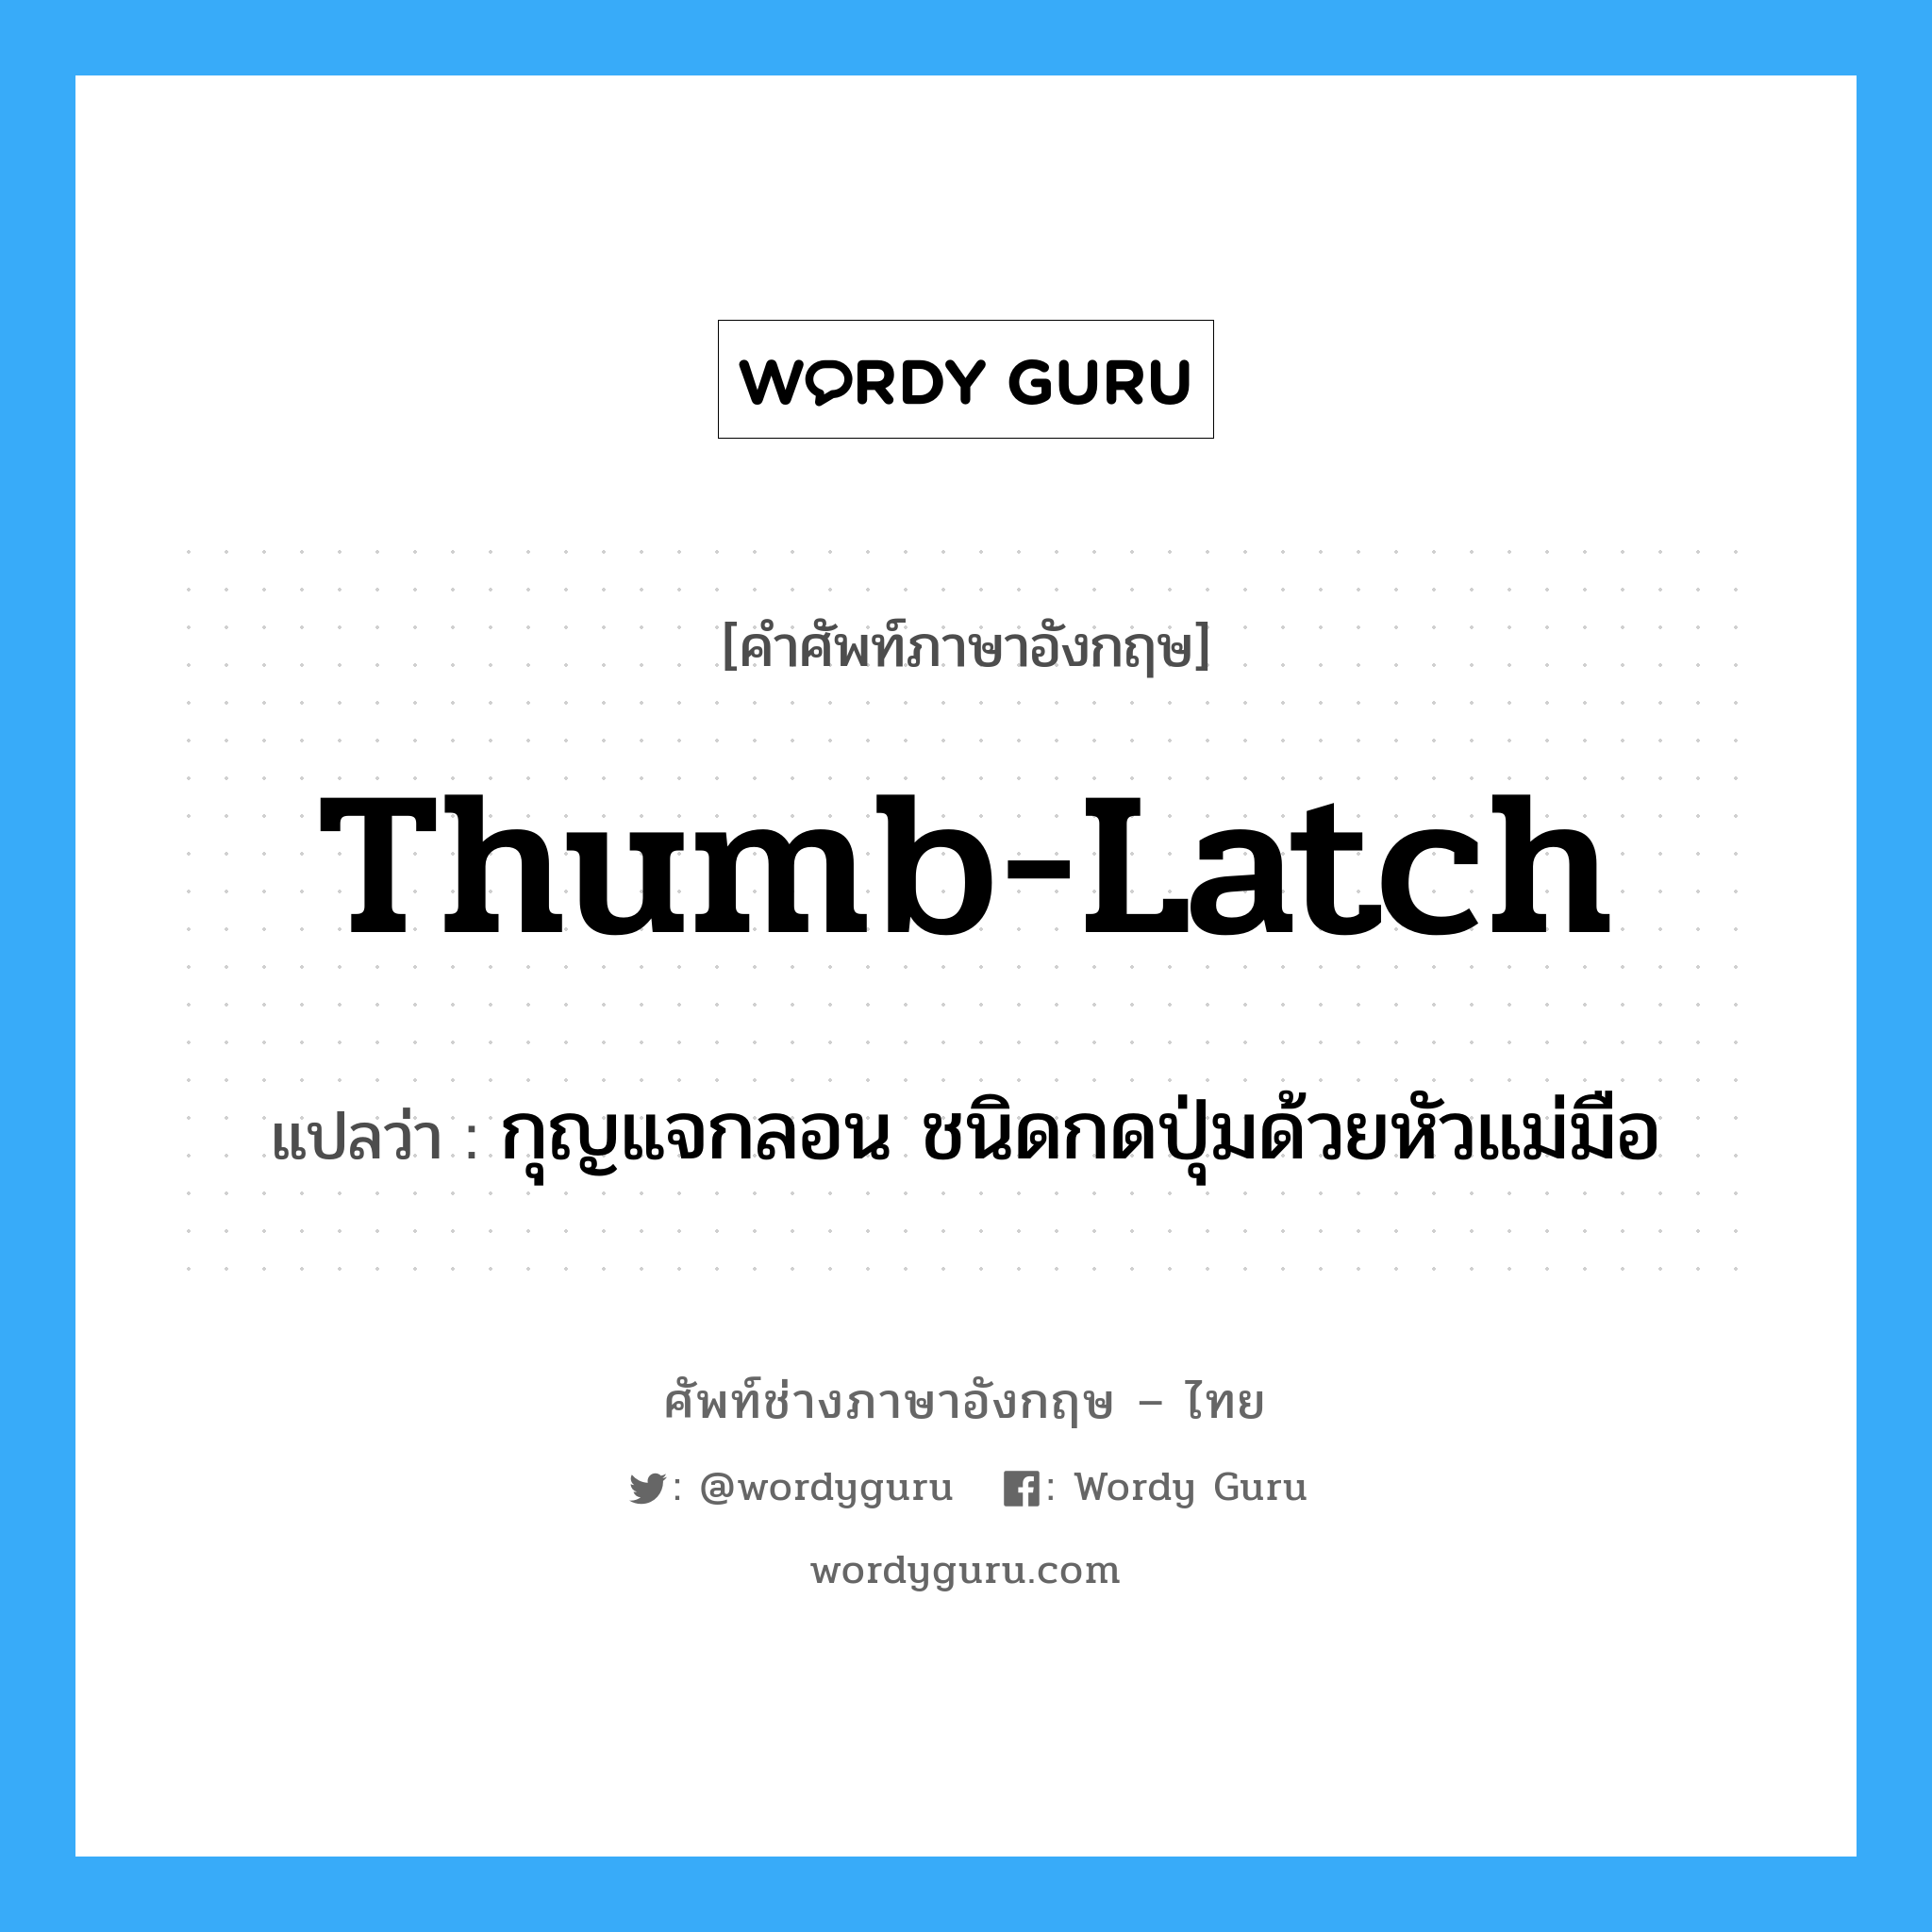 thumb-latch แปลว่า?, คำศัพท์ช่างภาษาอังกฤษ - ไทย thumb-latch คำศัพท์ภาษาอังกฤษ thumb-latch แปลว่า กุญแจกลอน ชนิดกดปุ่มด้วยหัวแม่มือ